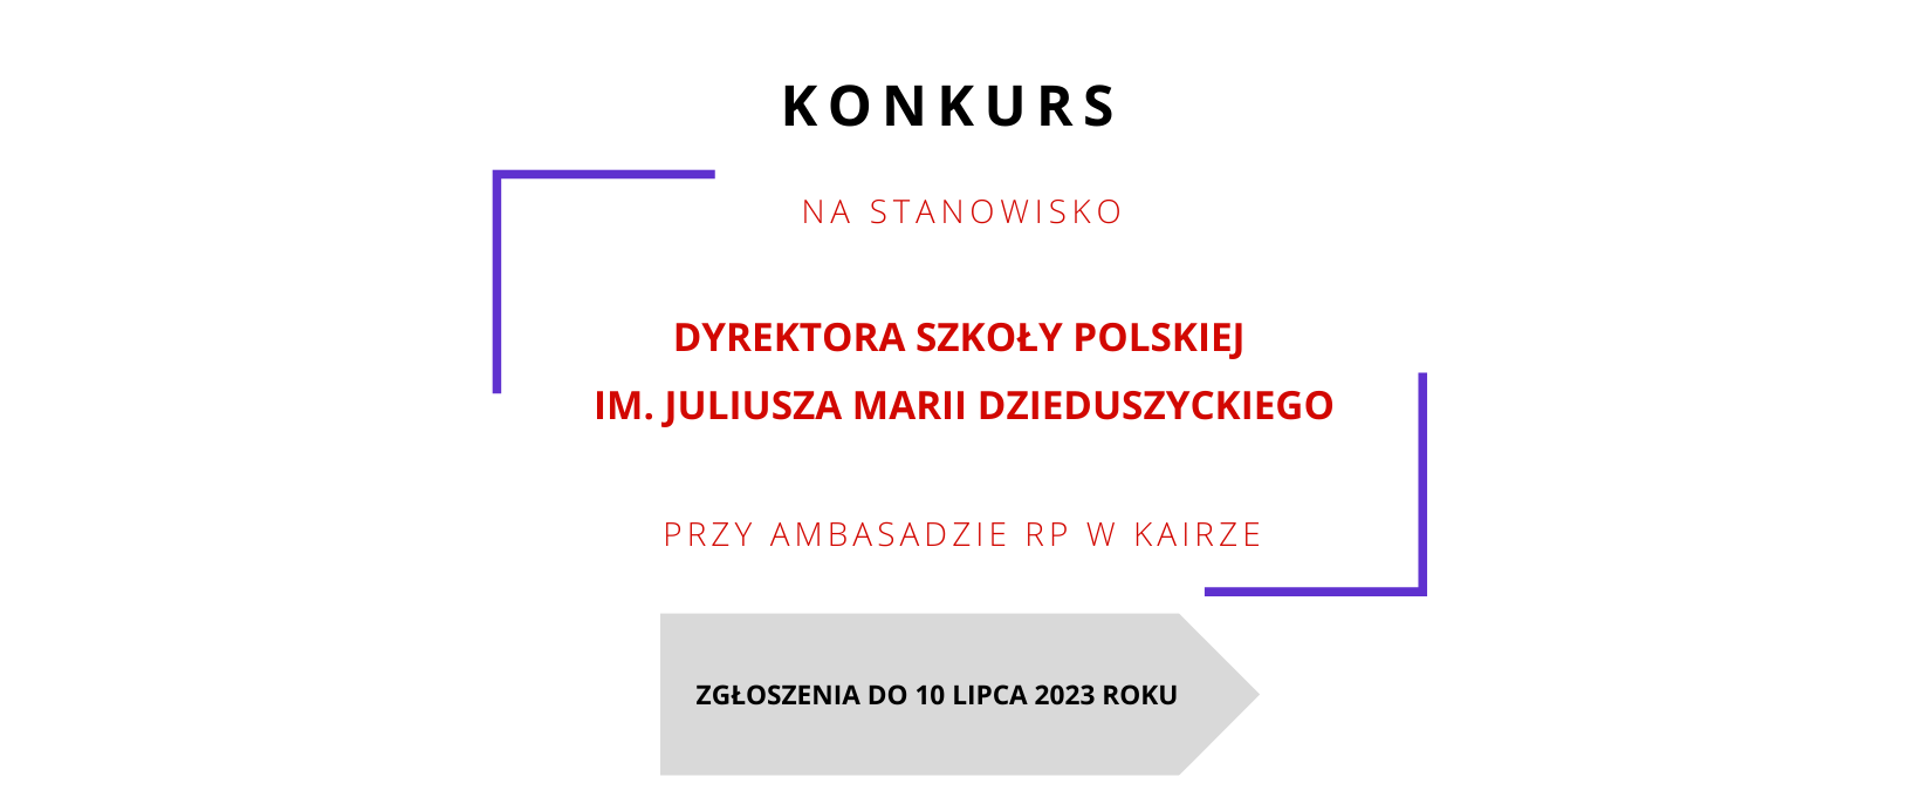 Konkurs na stanowisko Dyrektora Szkoły Polskiej